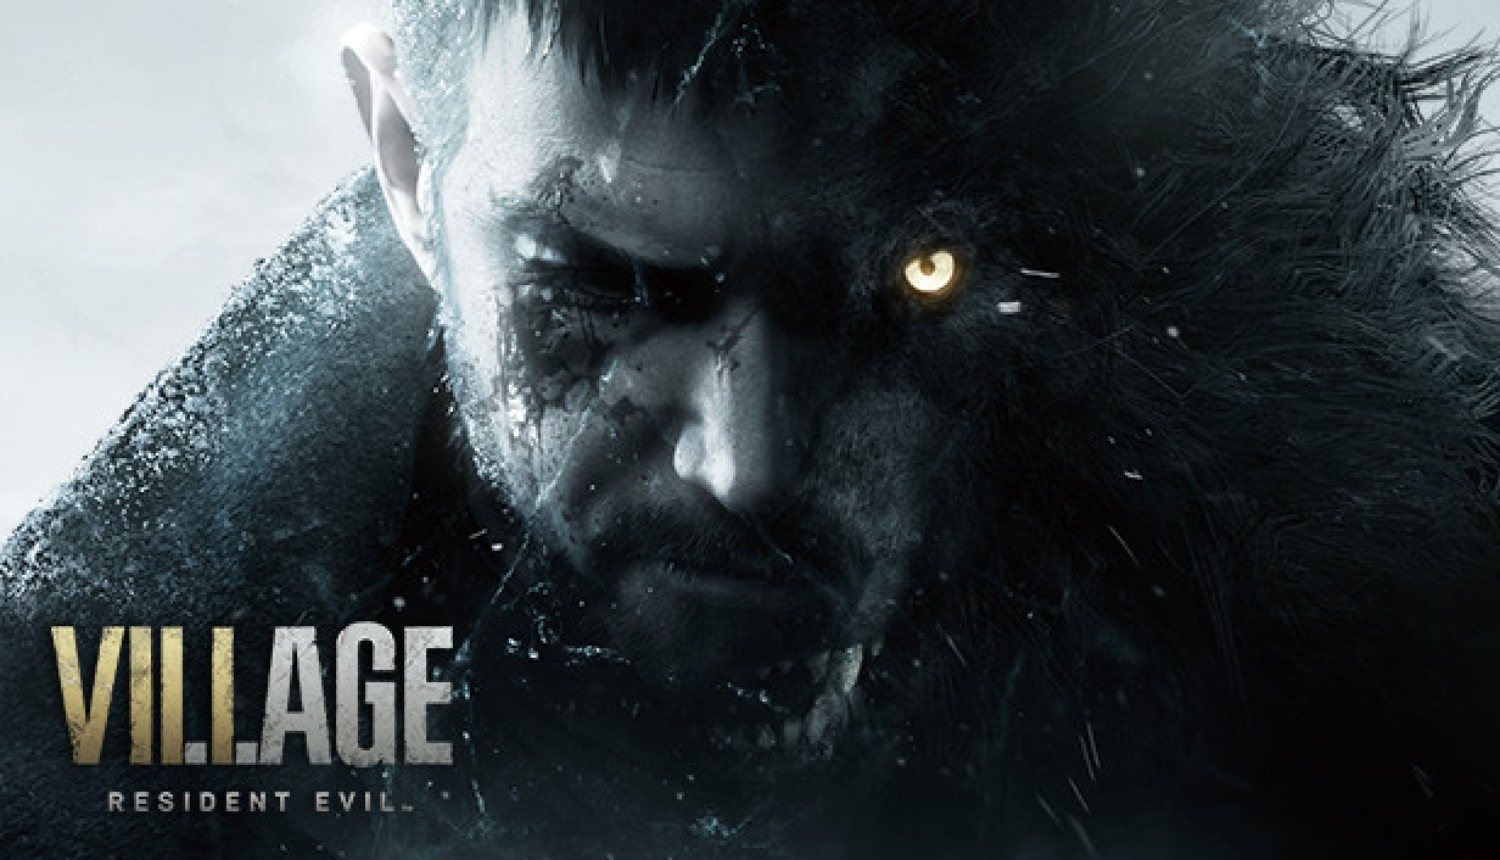 Digital Download PC Game Keys: Days Gone $10, God of War $24, Resident Evil Village $18 & more